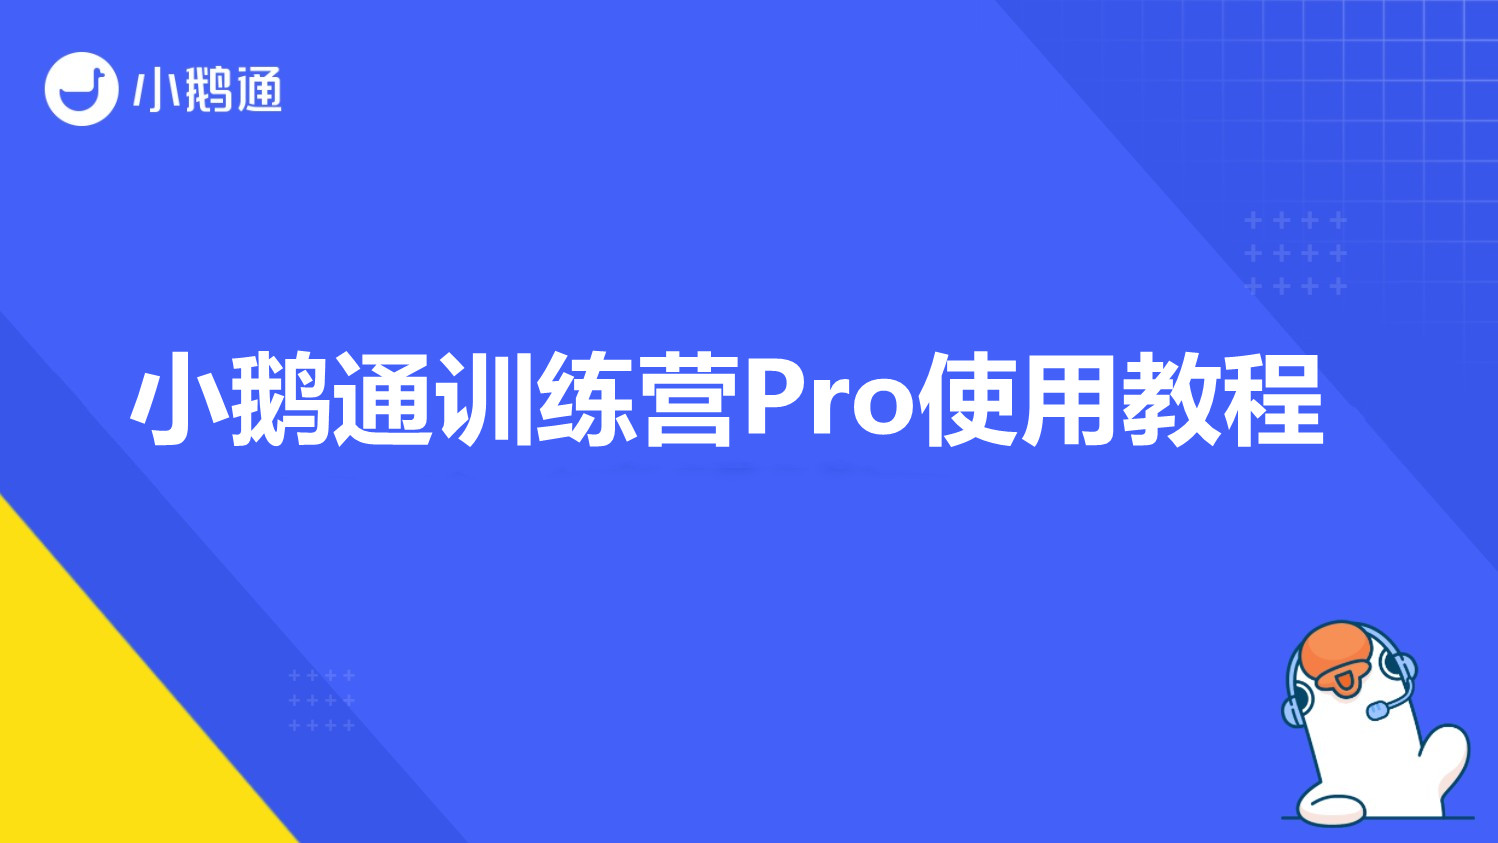 黑龙江小鹅通训练营Pro使用教程